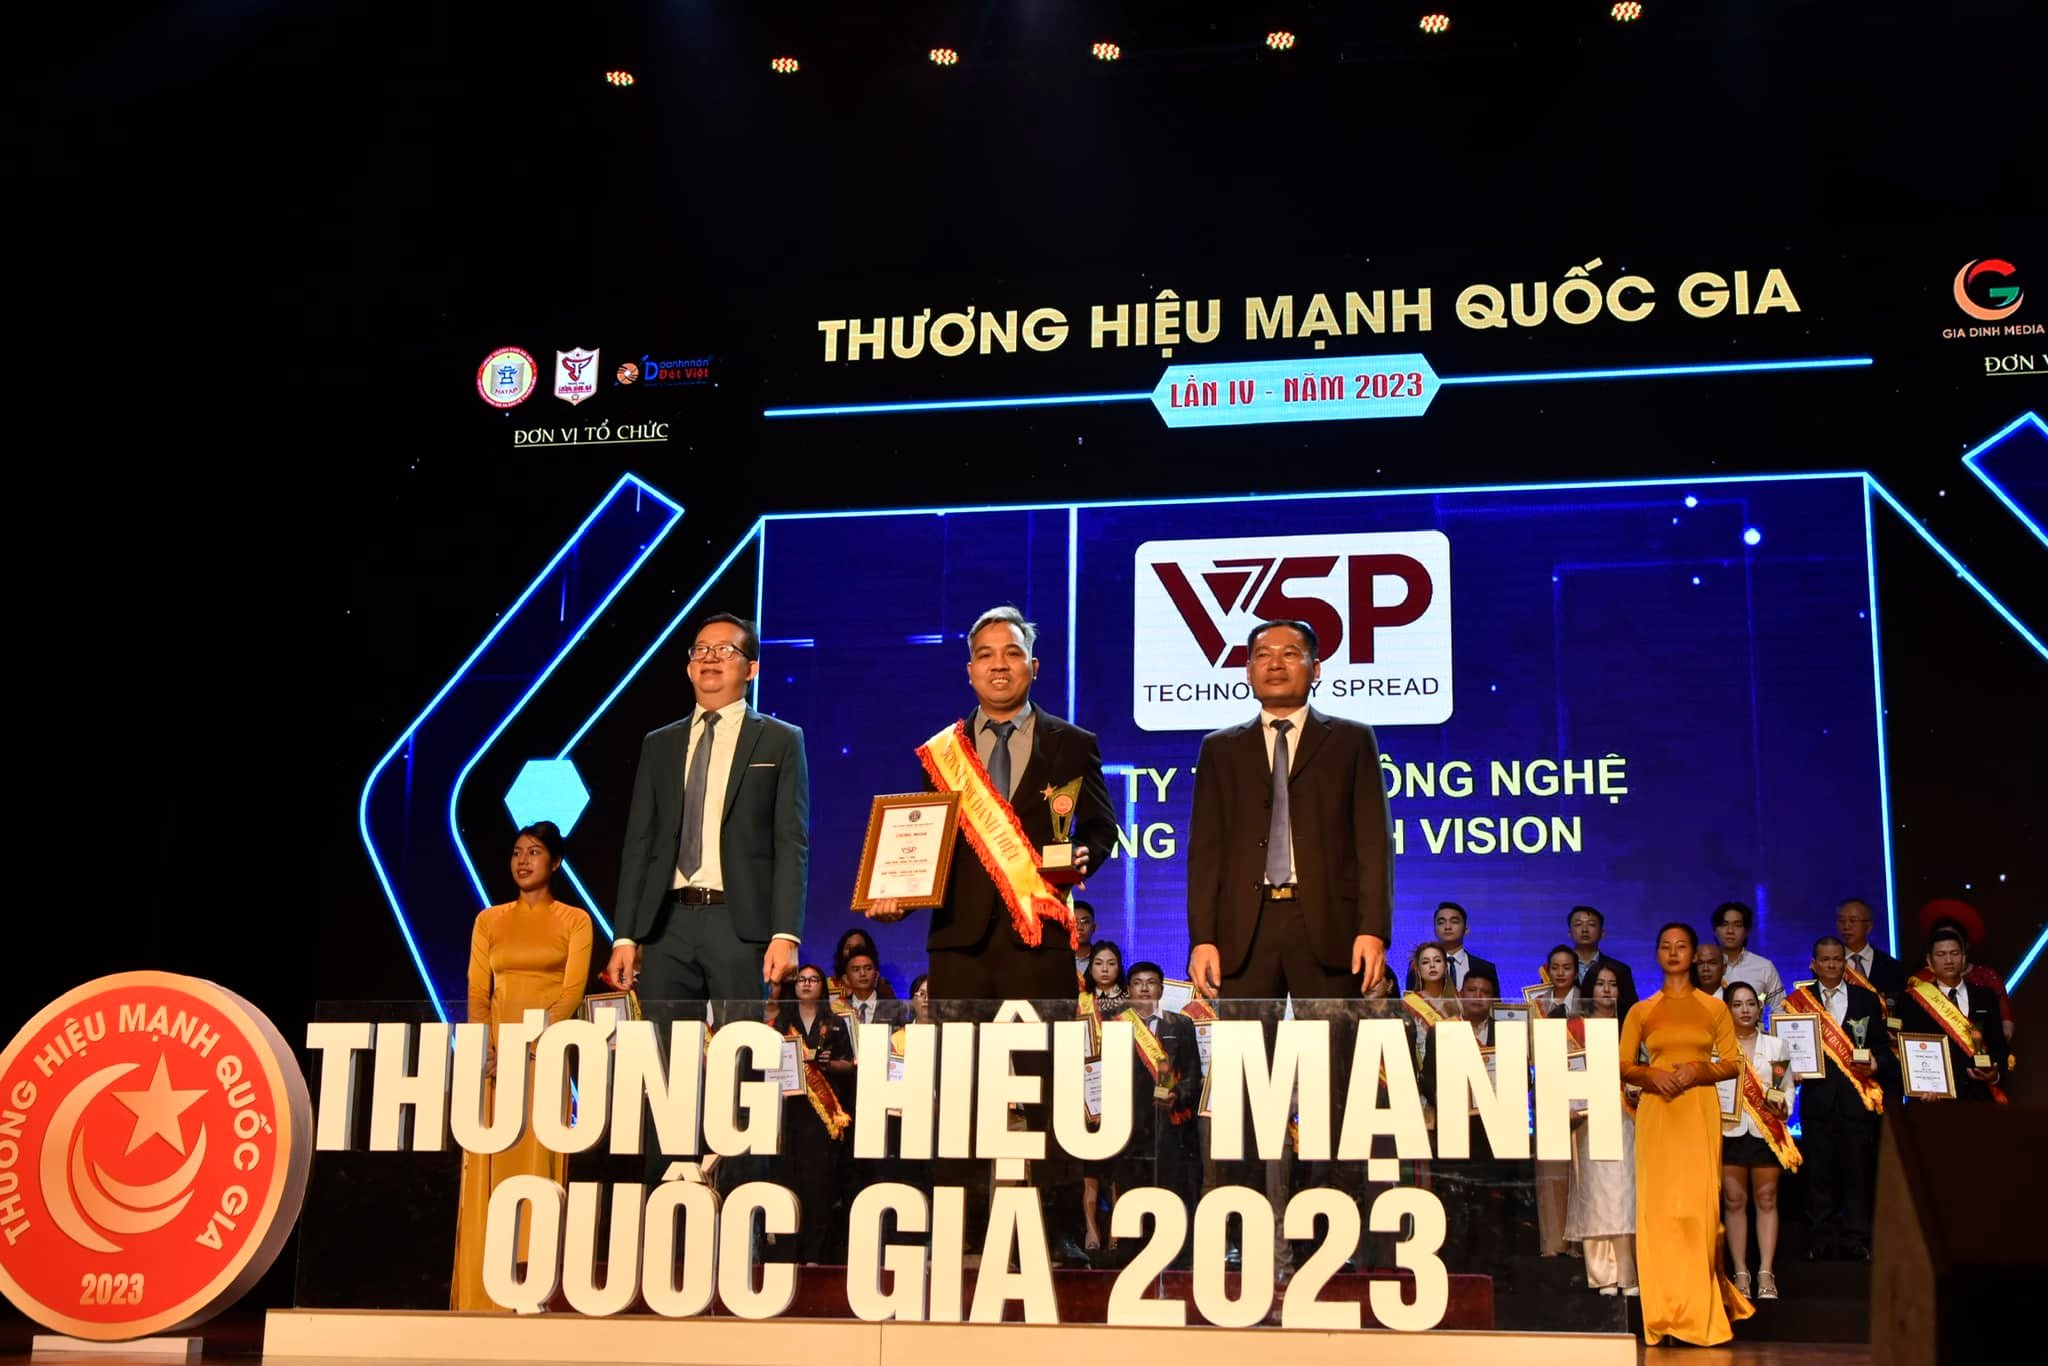 Đại  diện VSP nhận giải thưởng “Sản phẩm & dịch vụ tin dùng 2023”